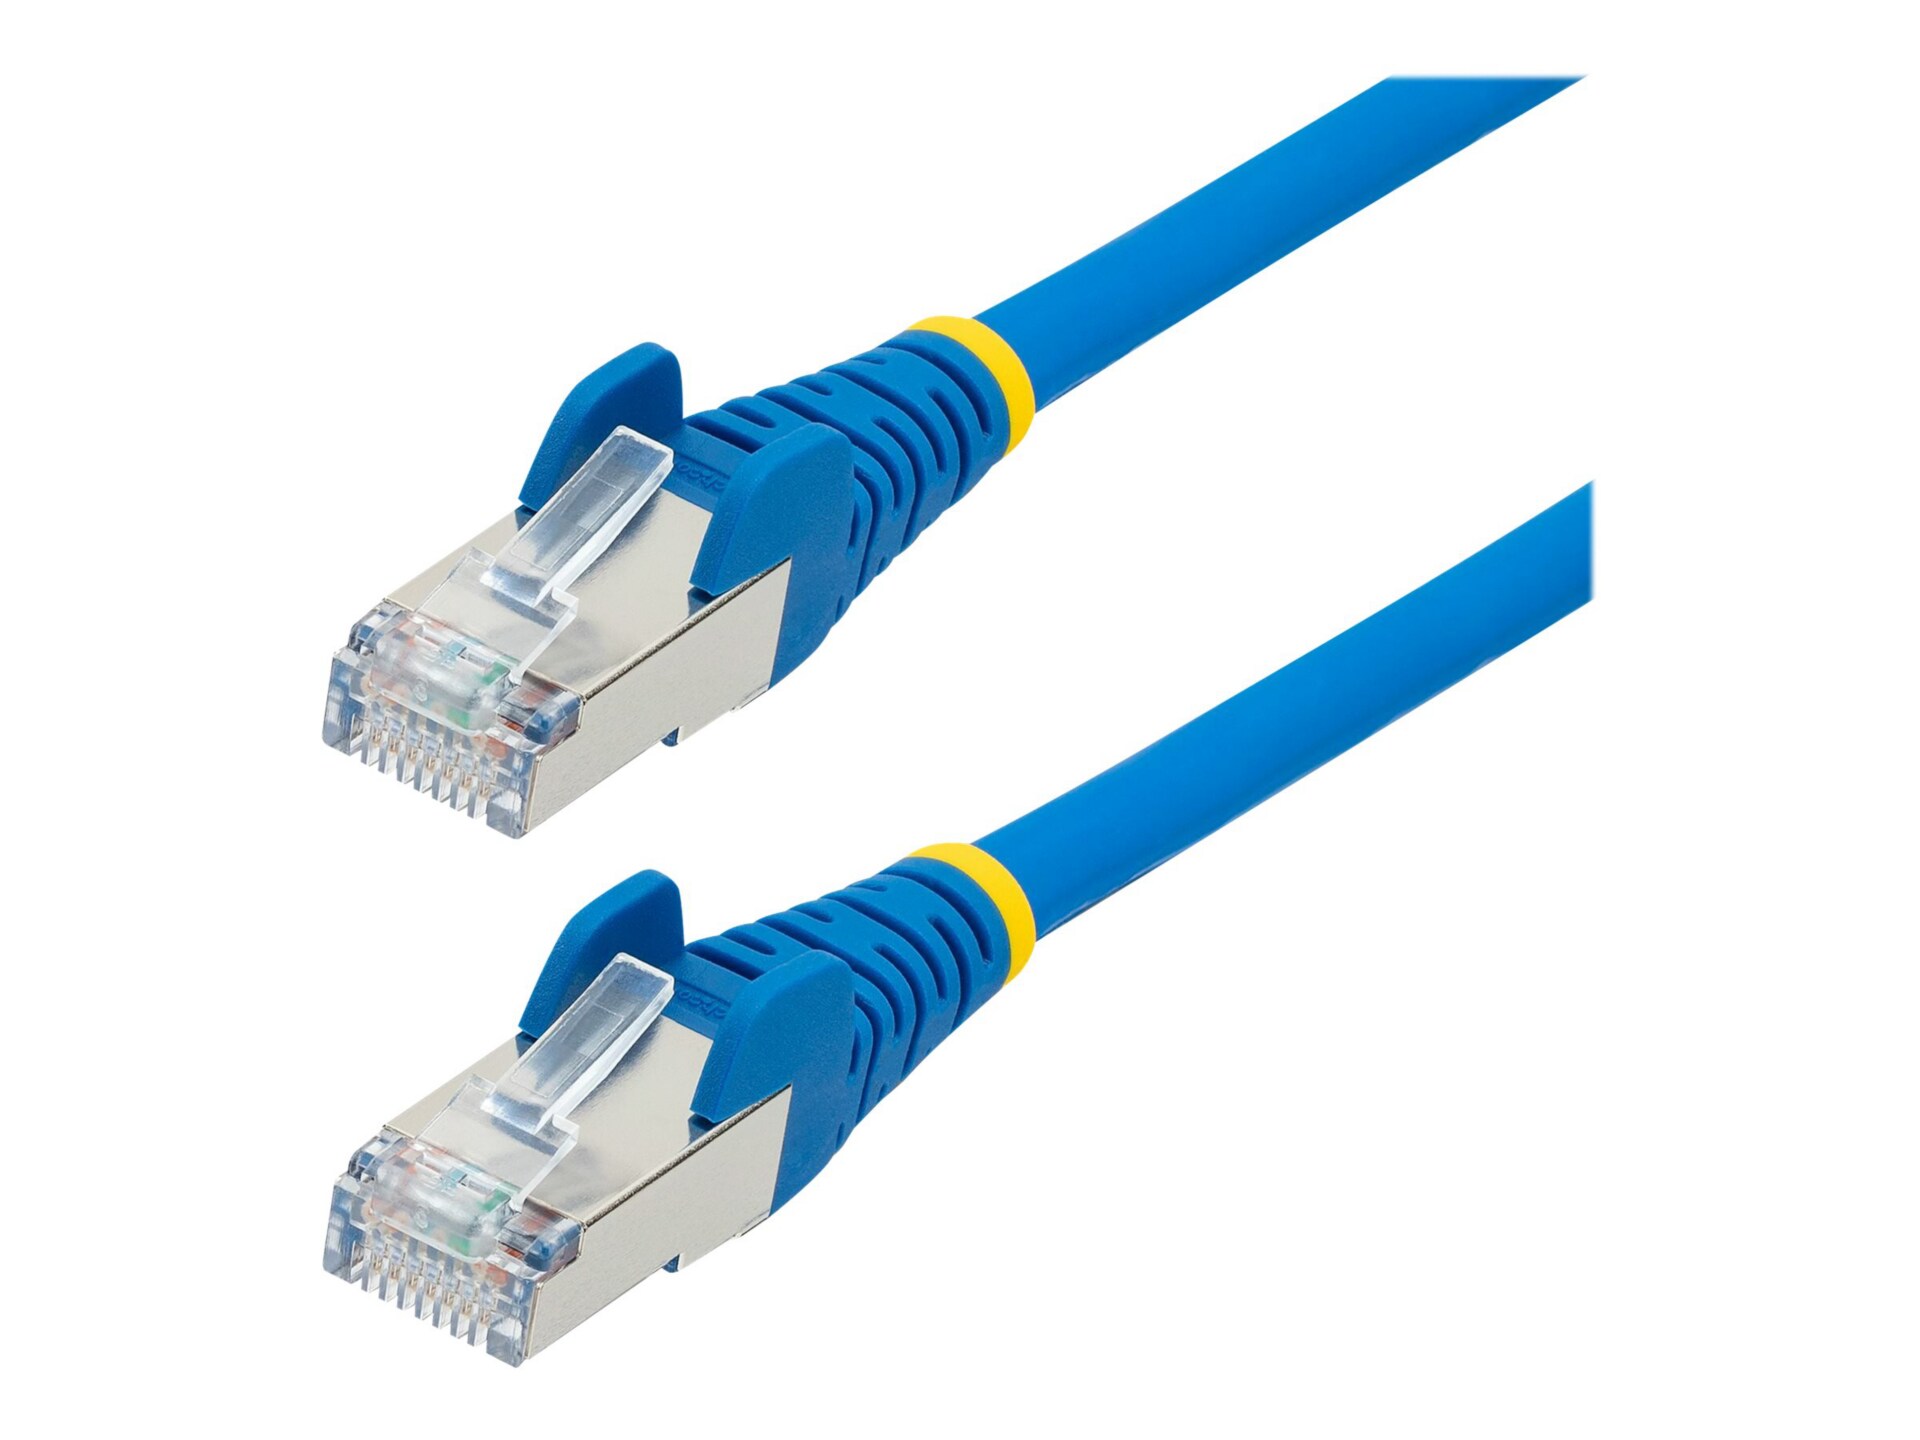 StarTech.com 30ft CAT6a Ethernet Cable, Blue Low Smoke Zero Halogen (LSZH)